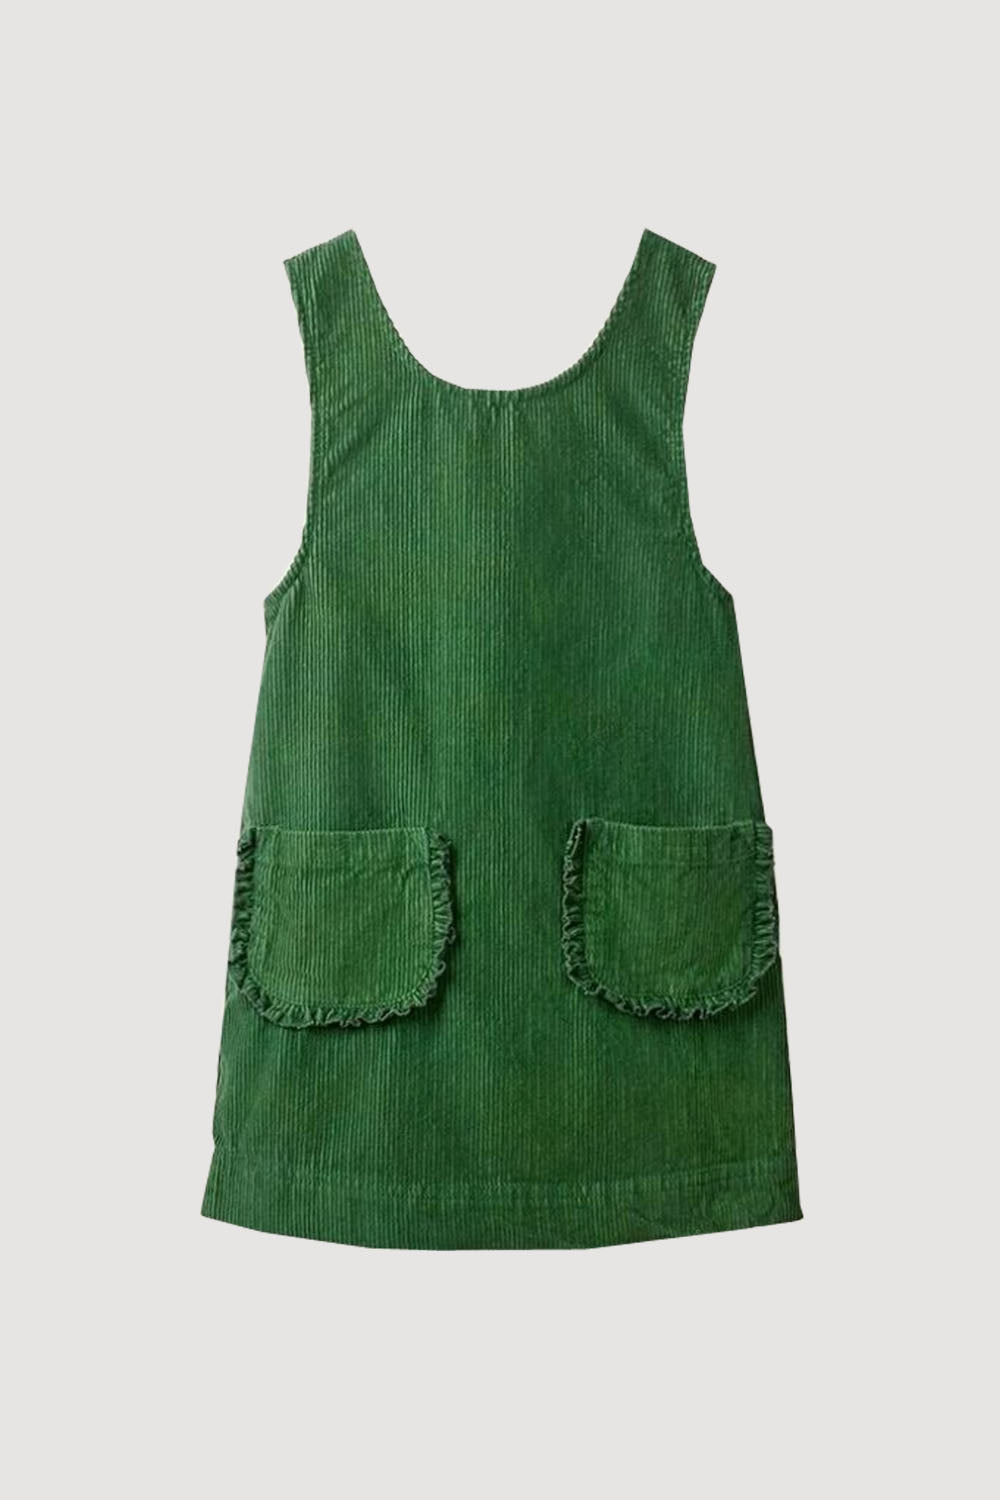 GIRLS - Green Corduroy Jumper Dress - Hannah Rose Vintage Boutique